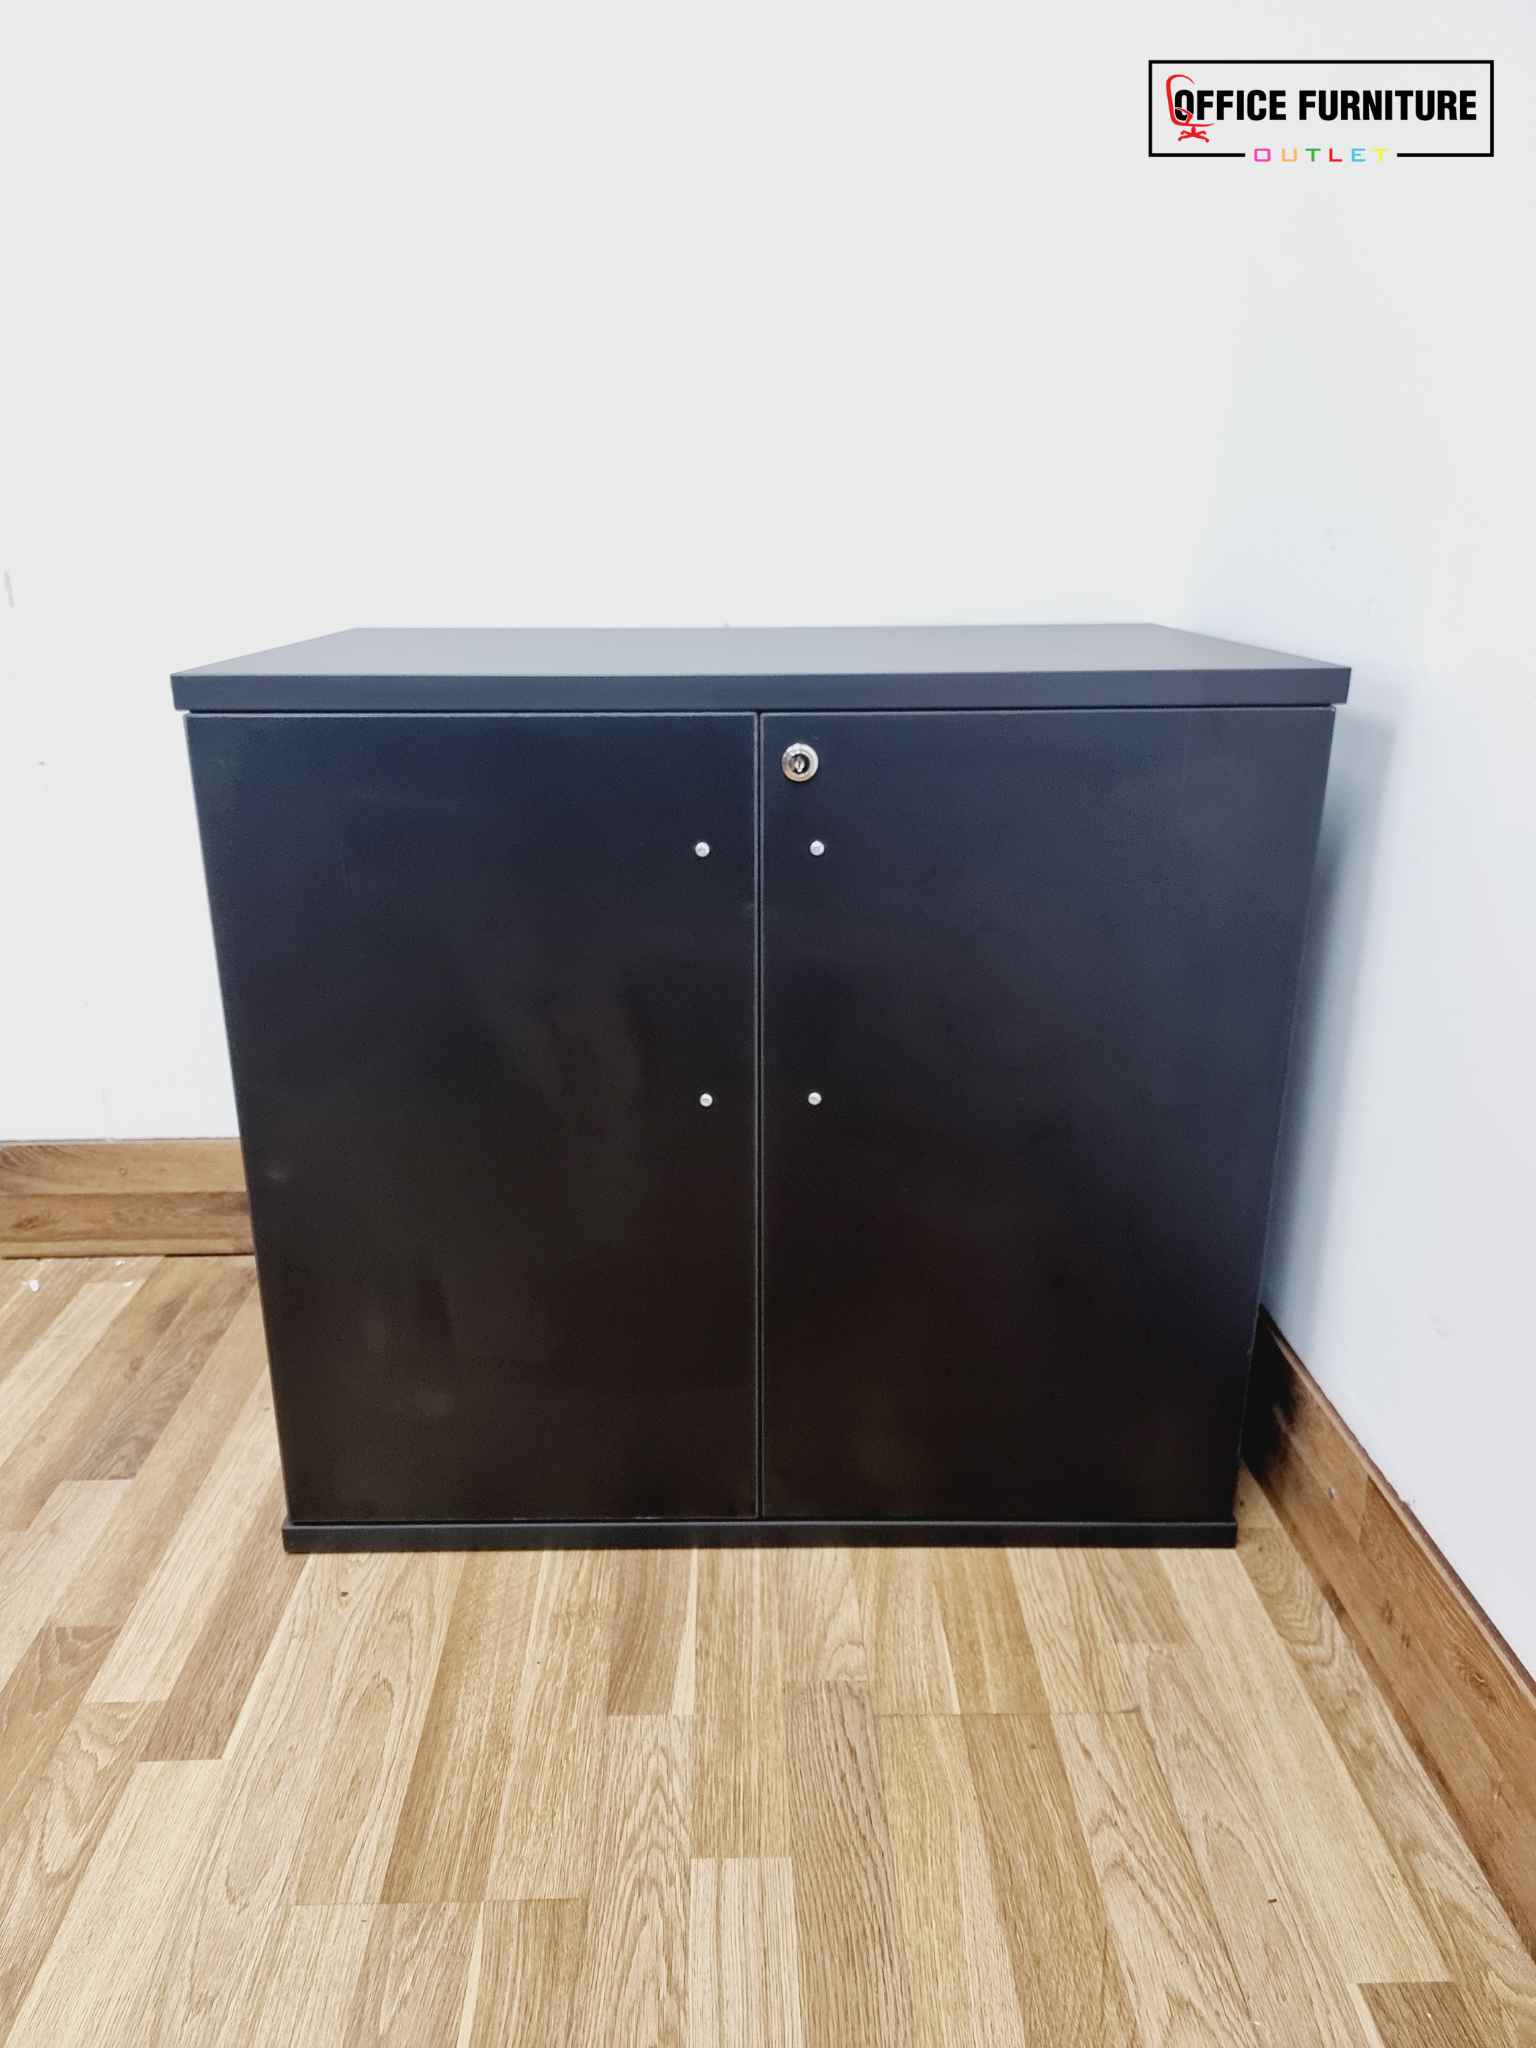 Brand New Black Double Door Storage Cabinet